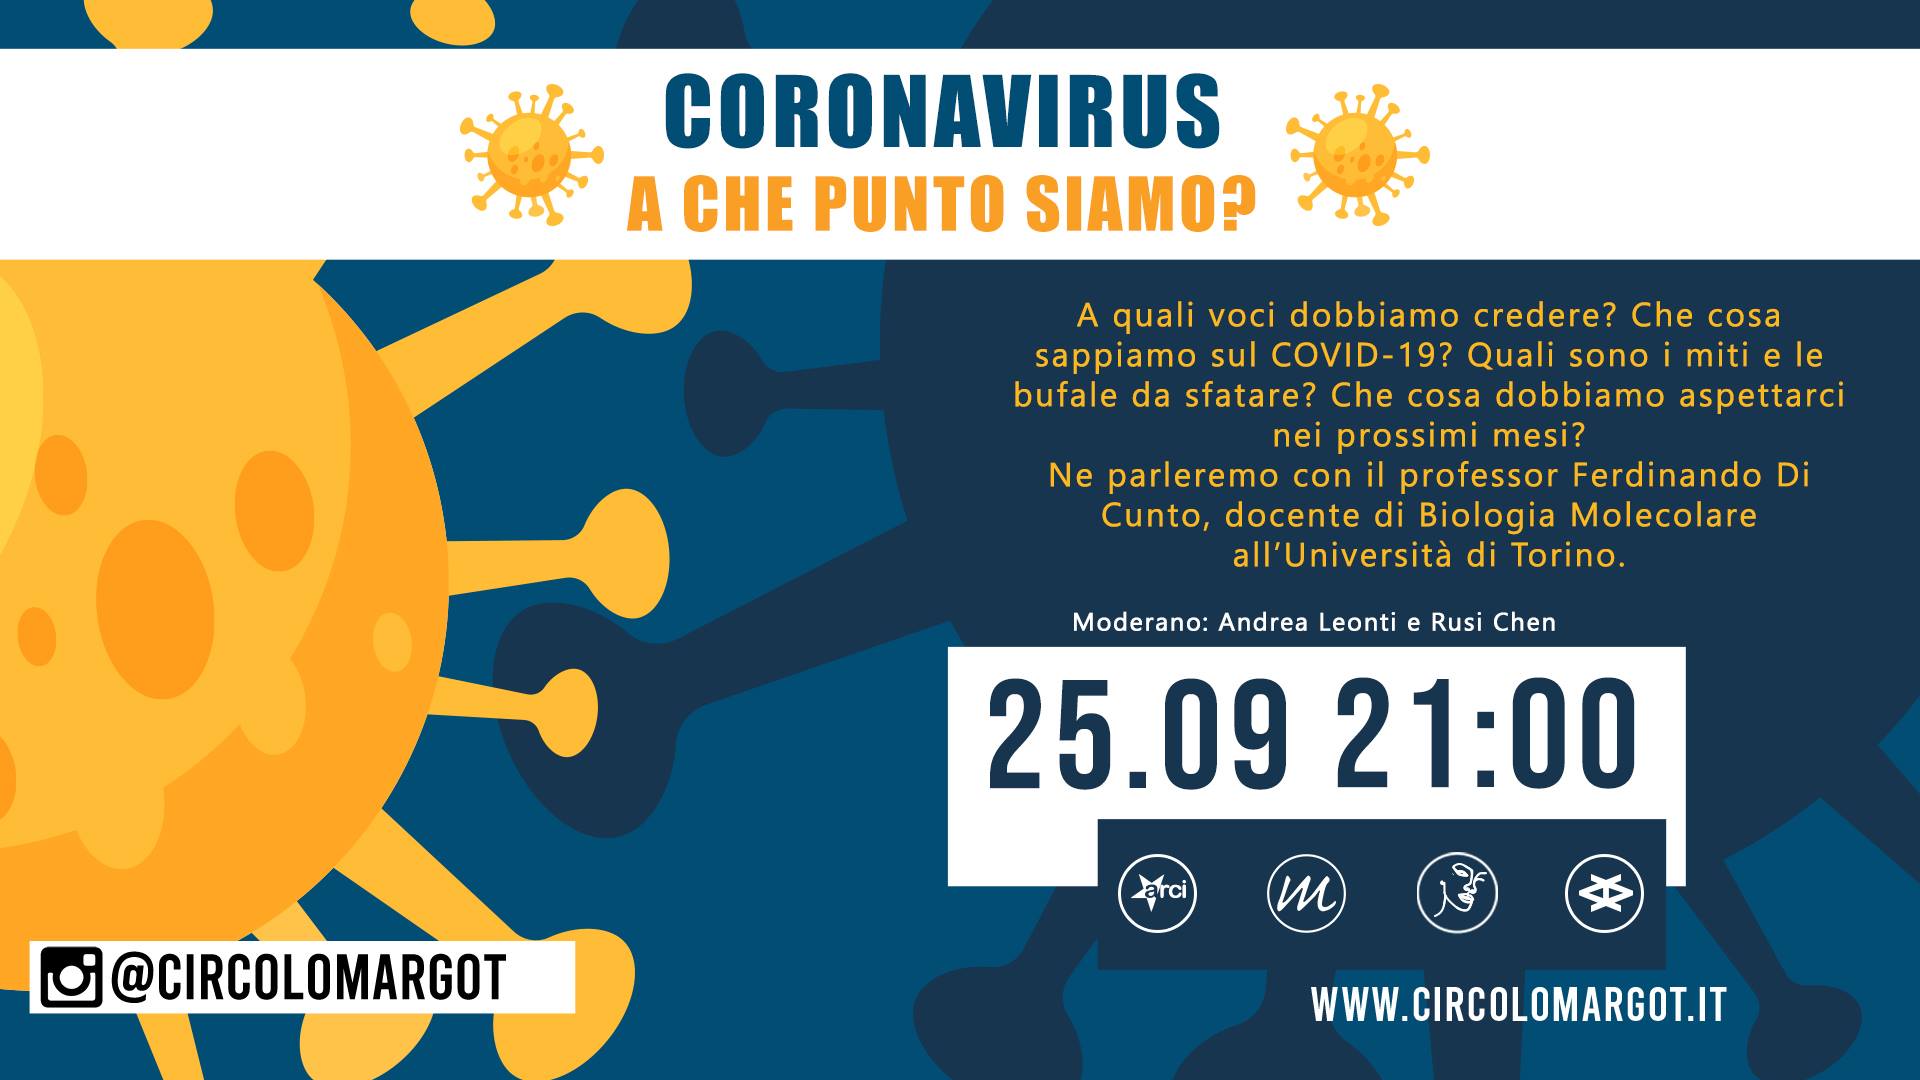 Coronavirus: a che punto siamo?